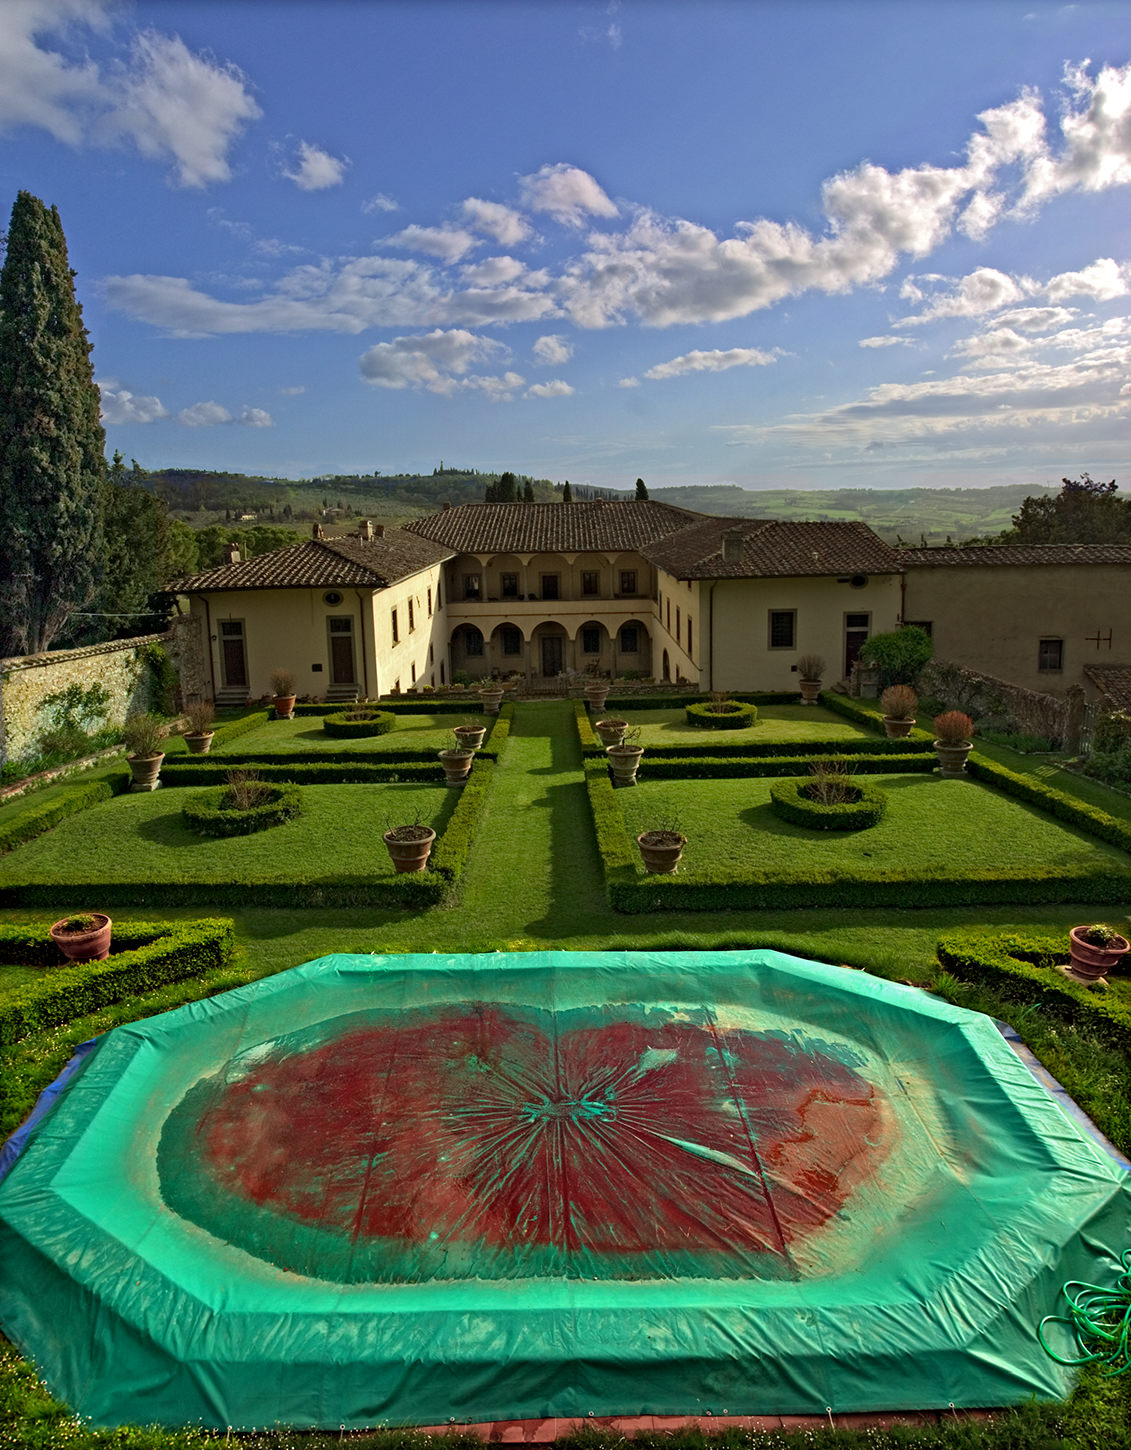 Tuscan Palace